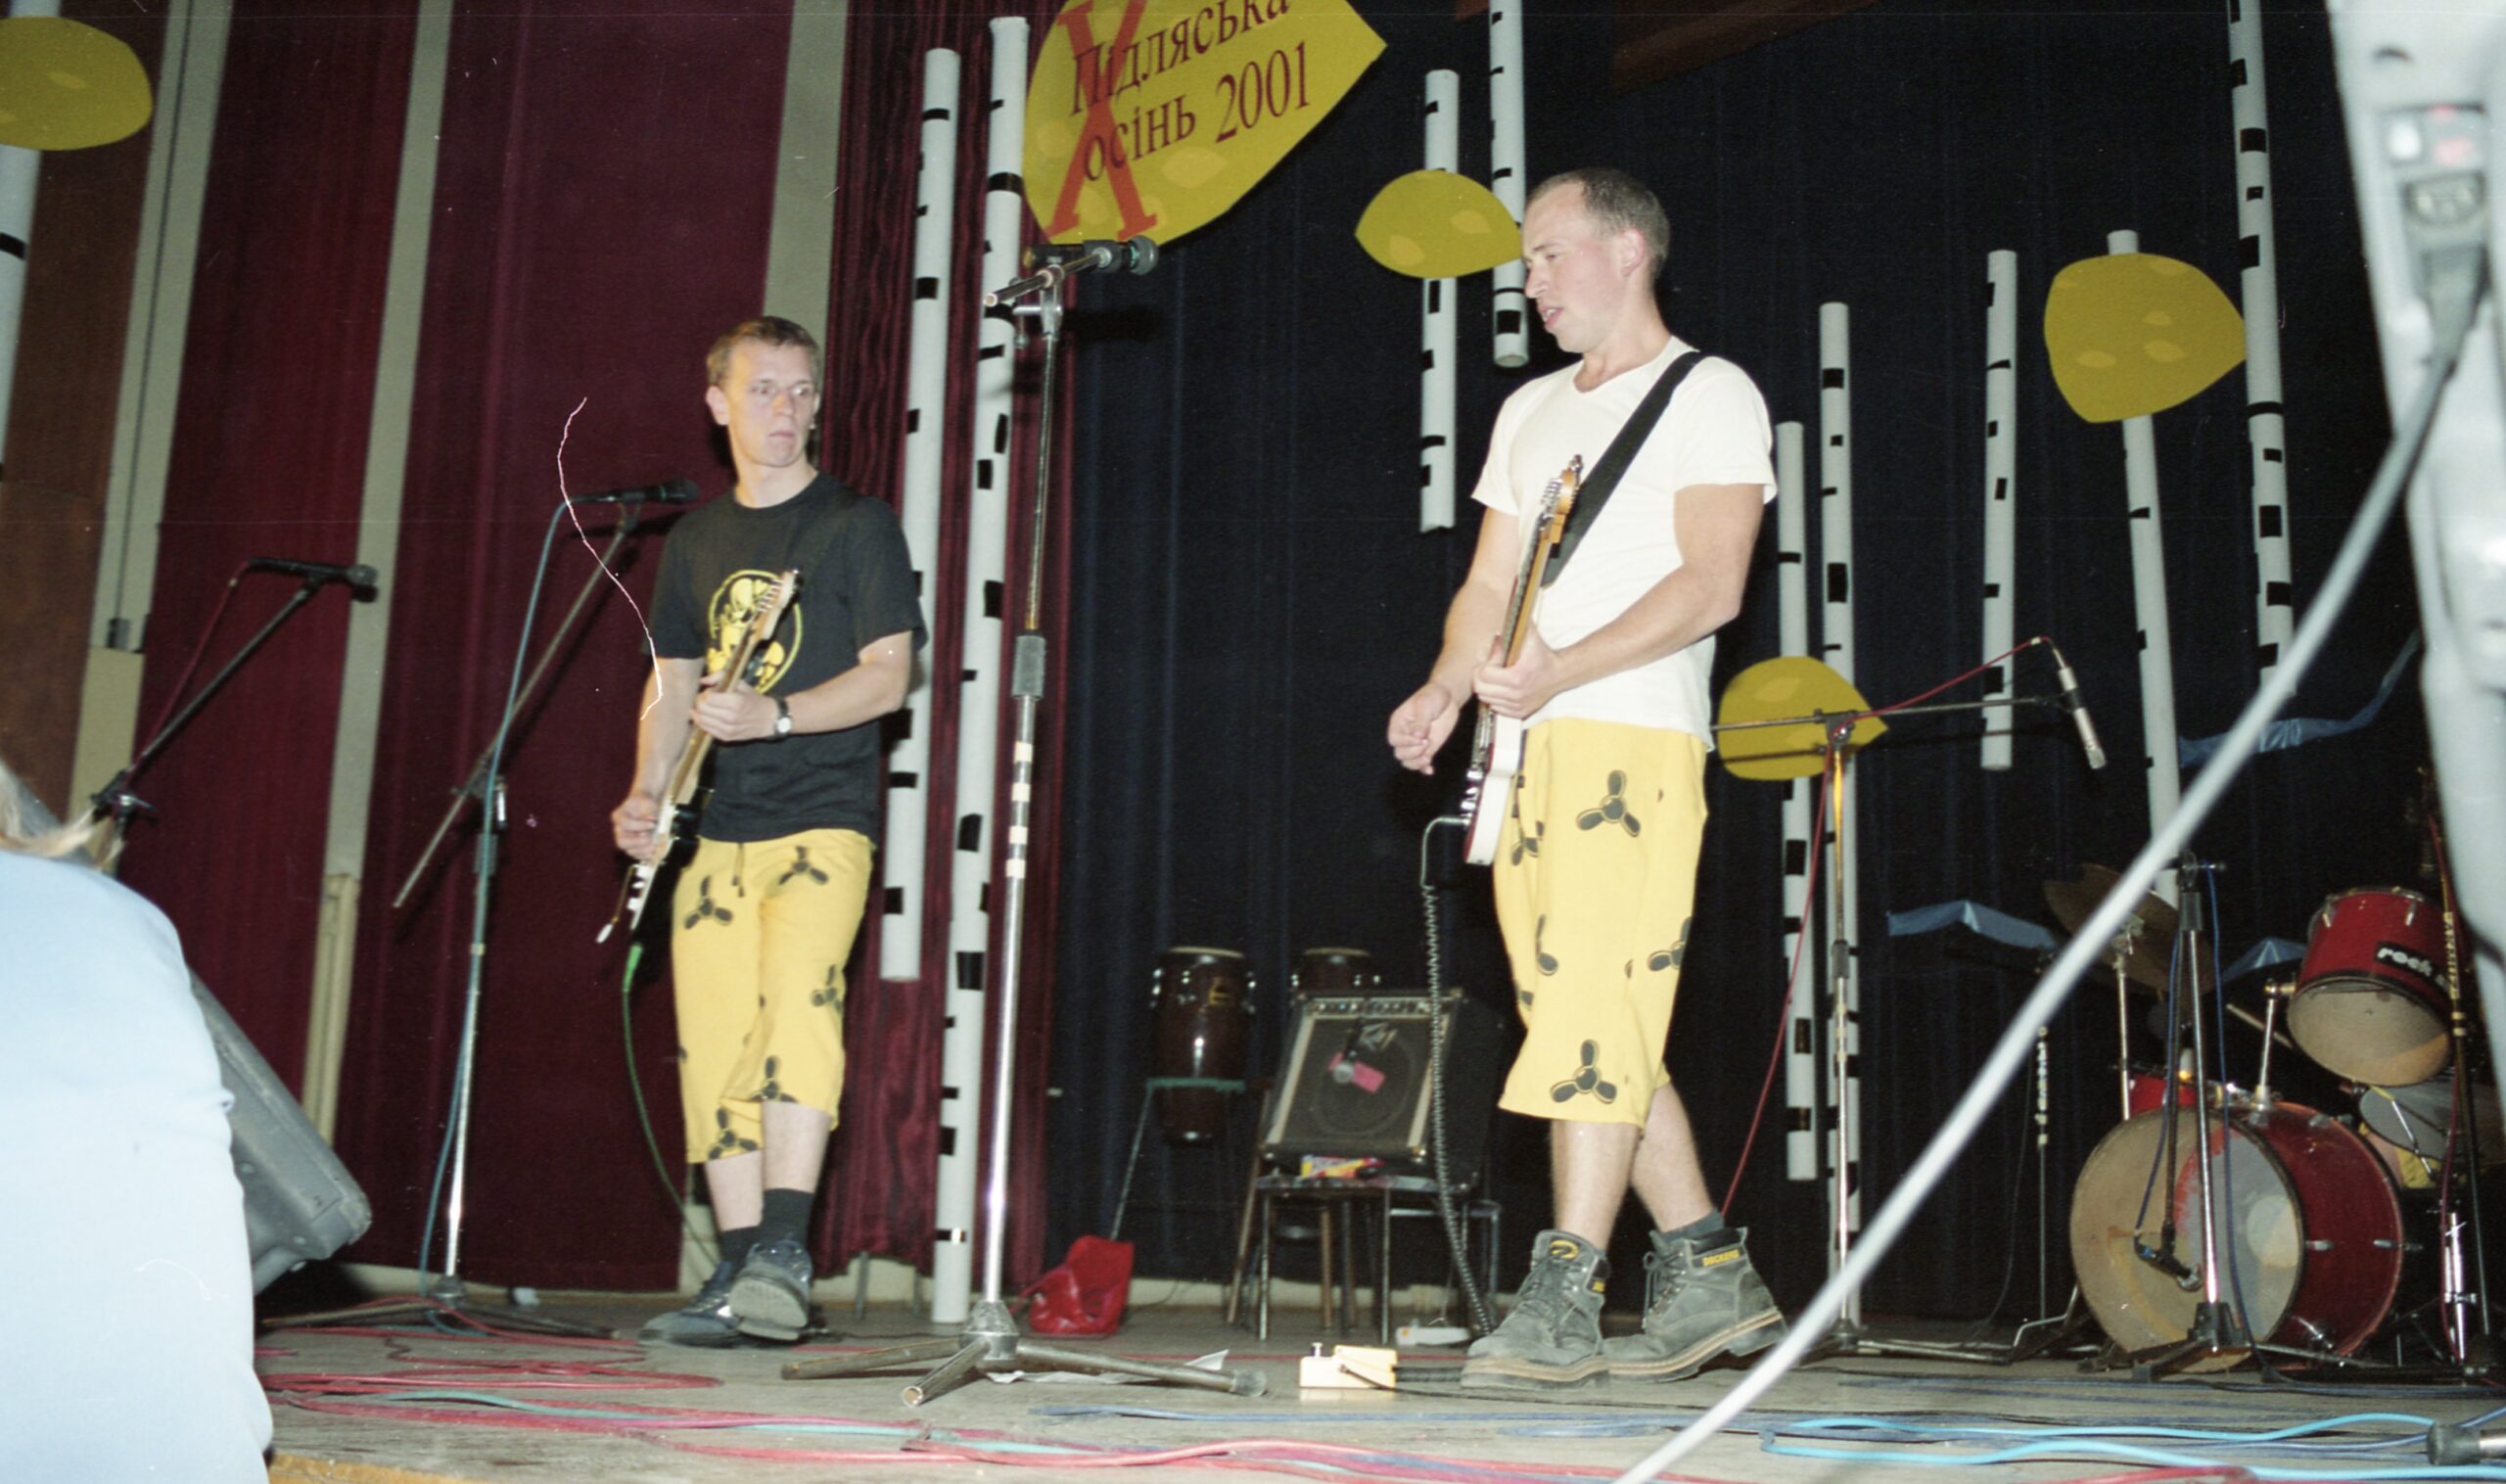 Фестиваль “Підляська осінь” 2001 – концерт Ot Vinta в Бiльську Пiдляському